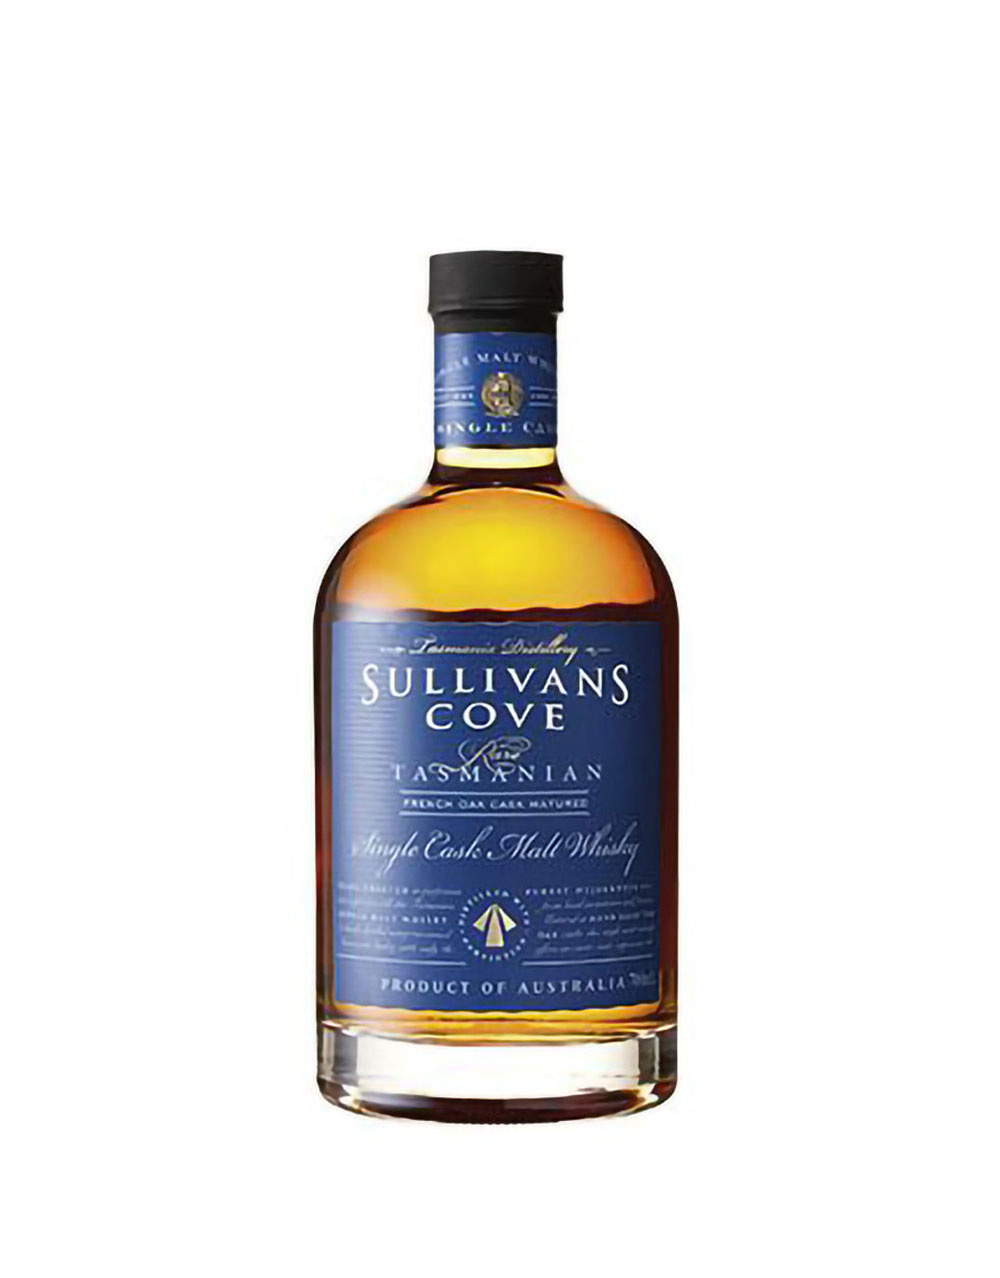 Sullivans Cove French Oak Single Cask Malt Whisky